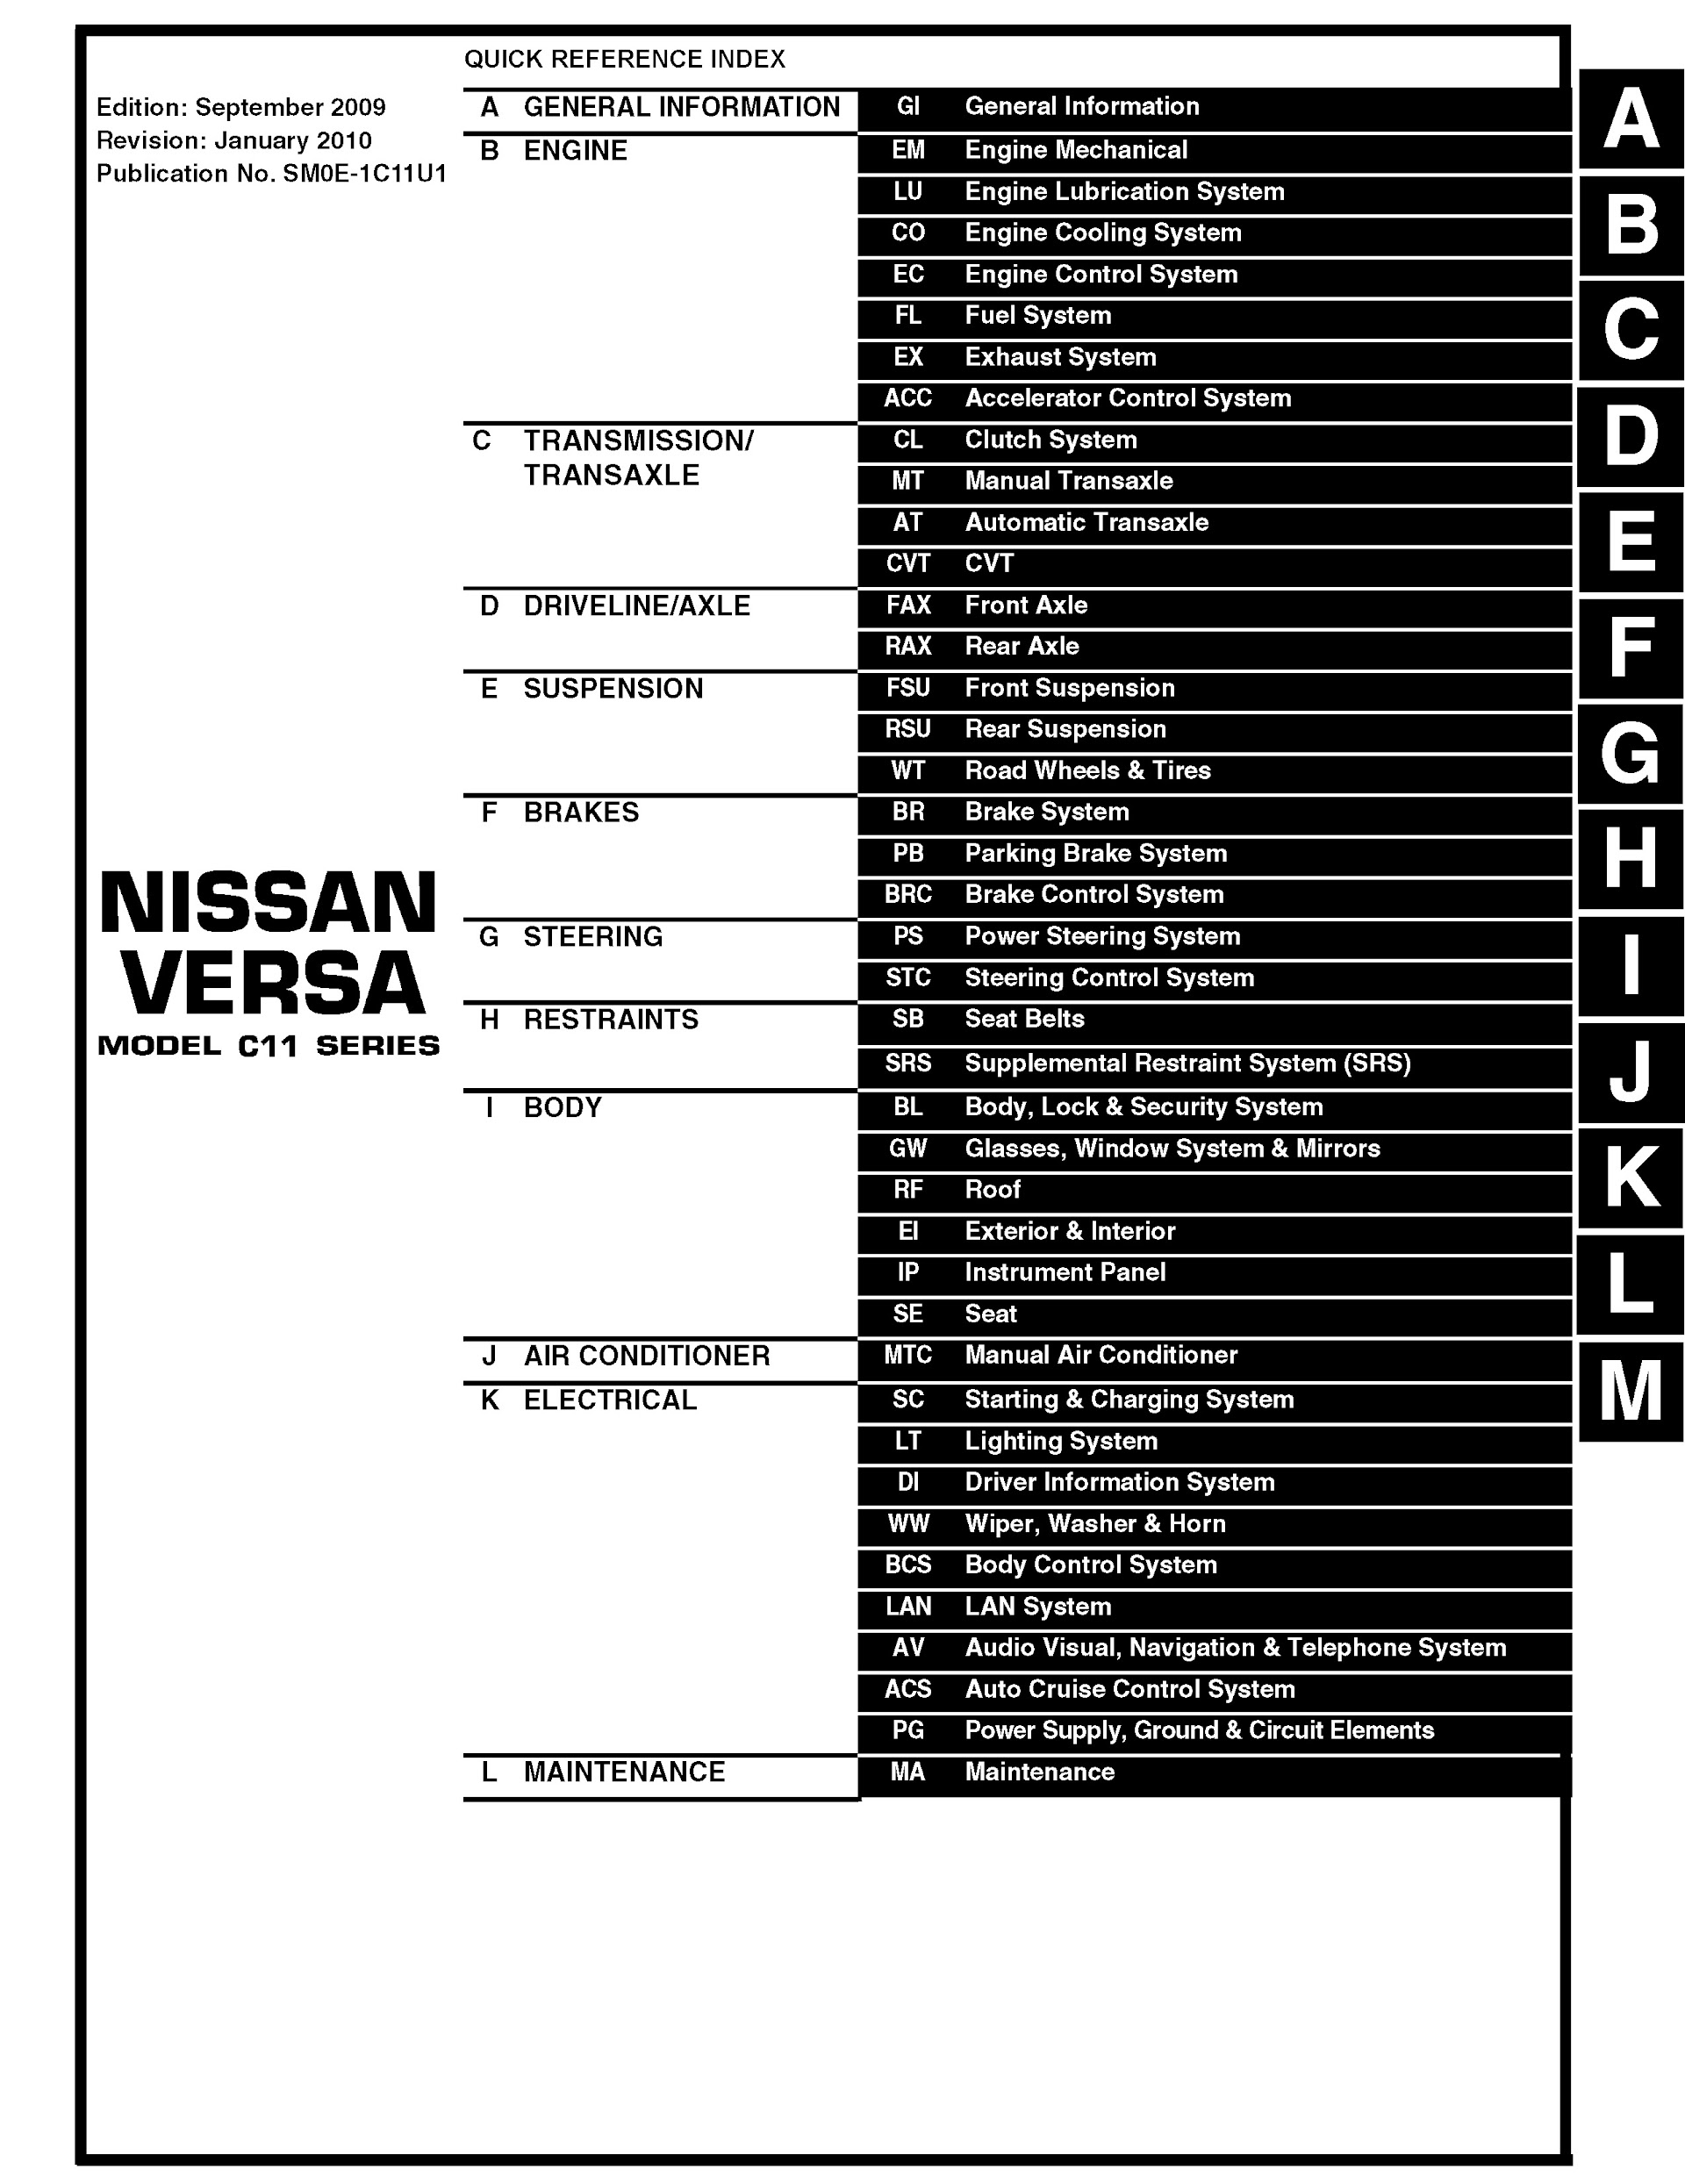 Table of Contents 2010 Nissan Versa Repair Manual